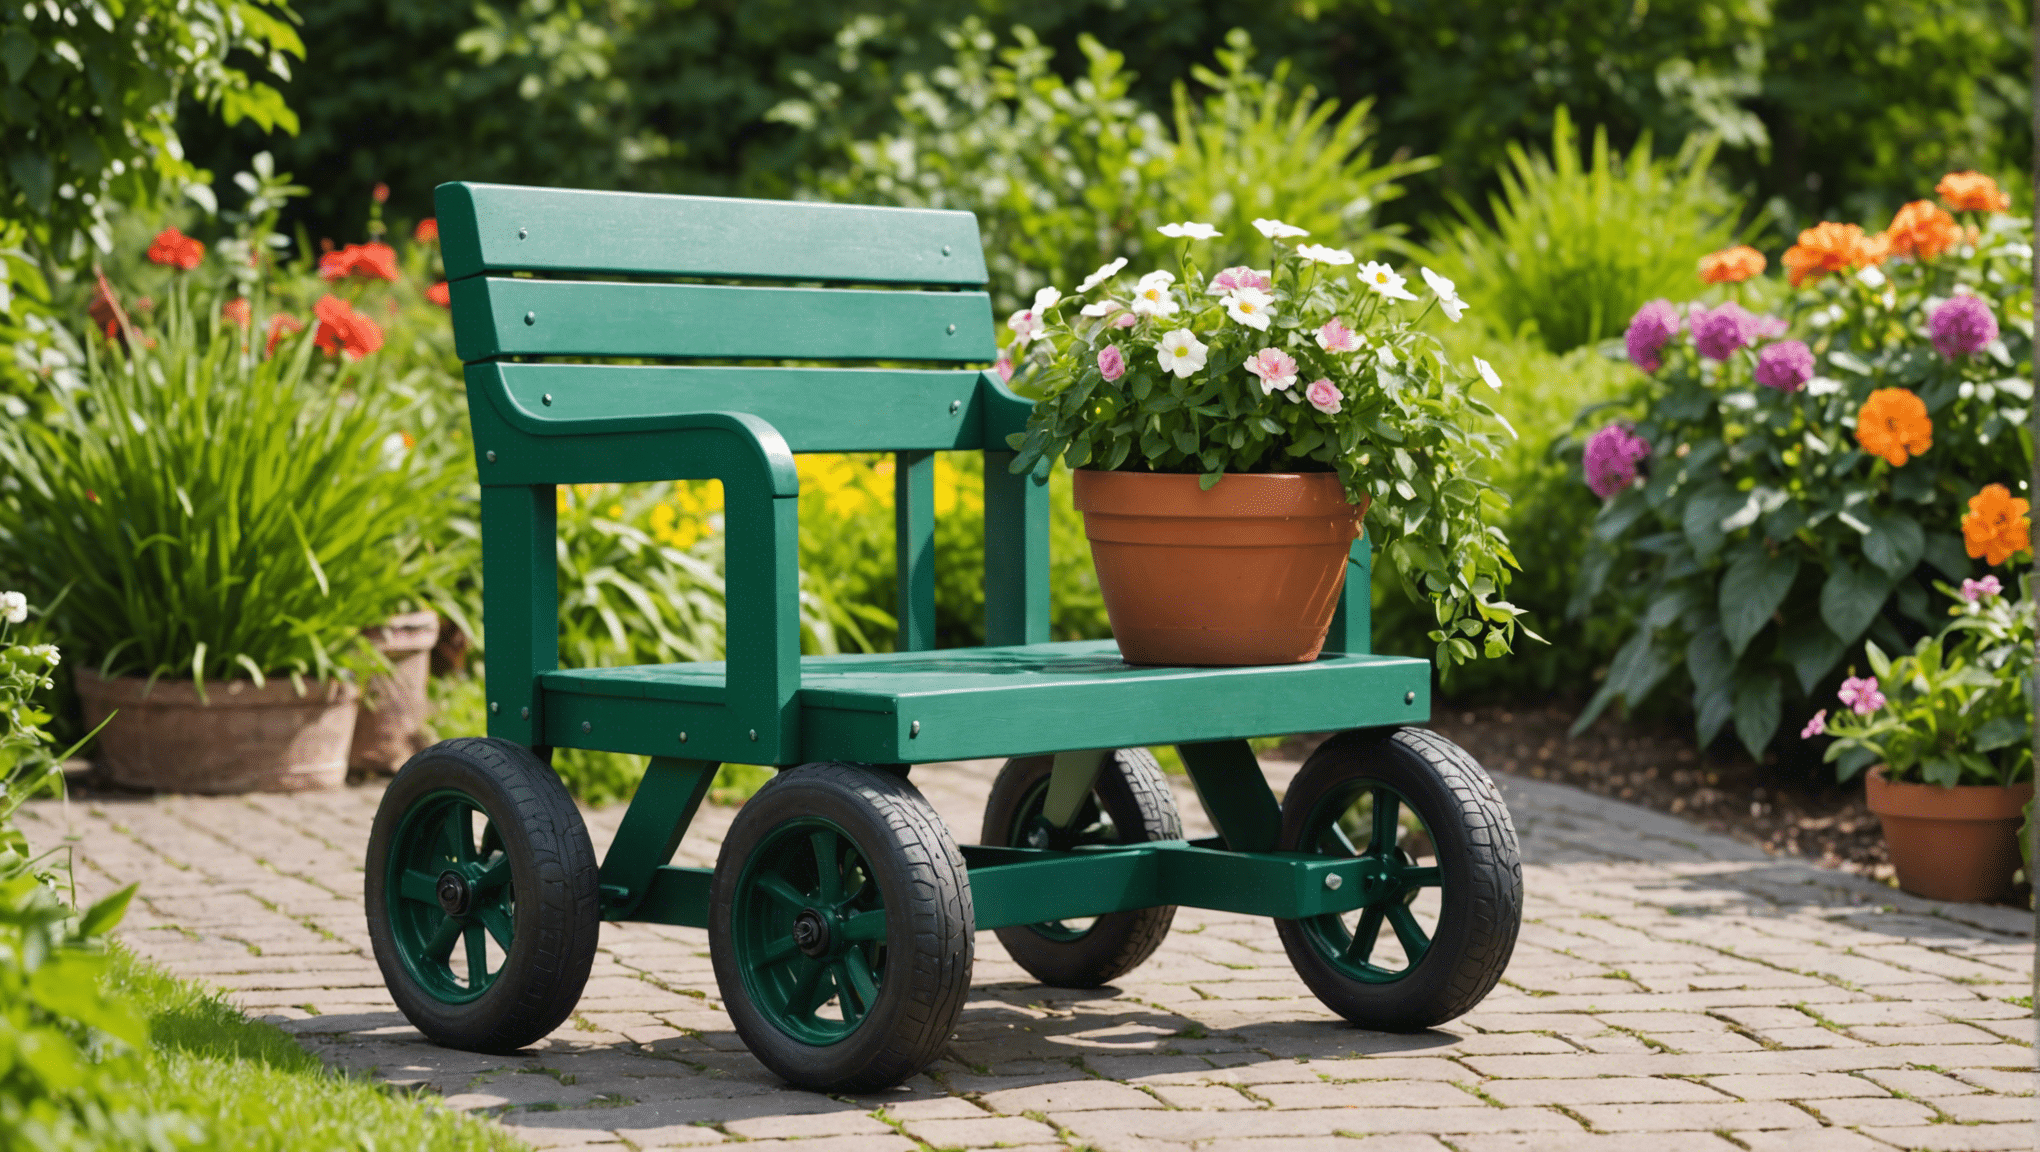 découvrez les avantages d'investir dans un siège de jardinage à roulettes et transformez votre expérience de jardinage. découvrez comment cet outil polyvalent peut améliorer votre confort et votre productivité dans le jardin.